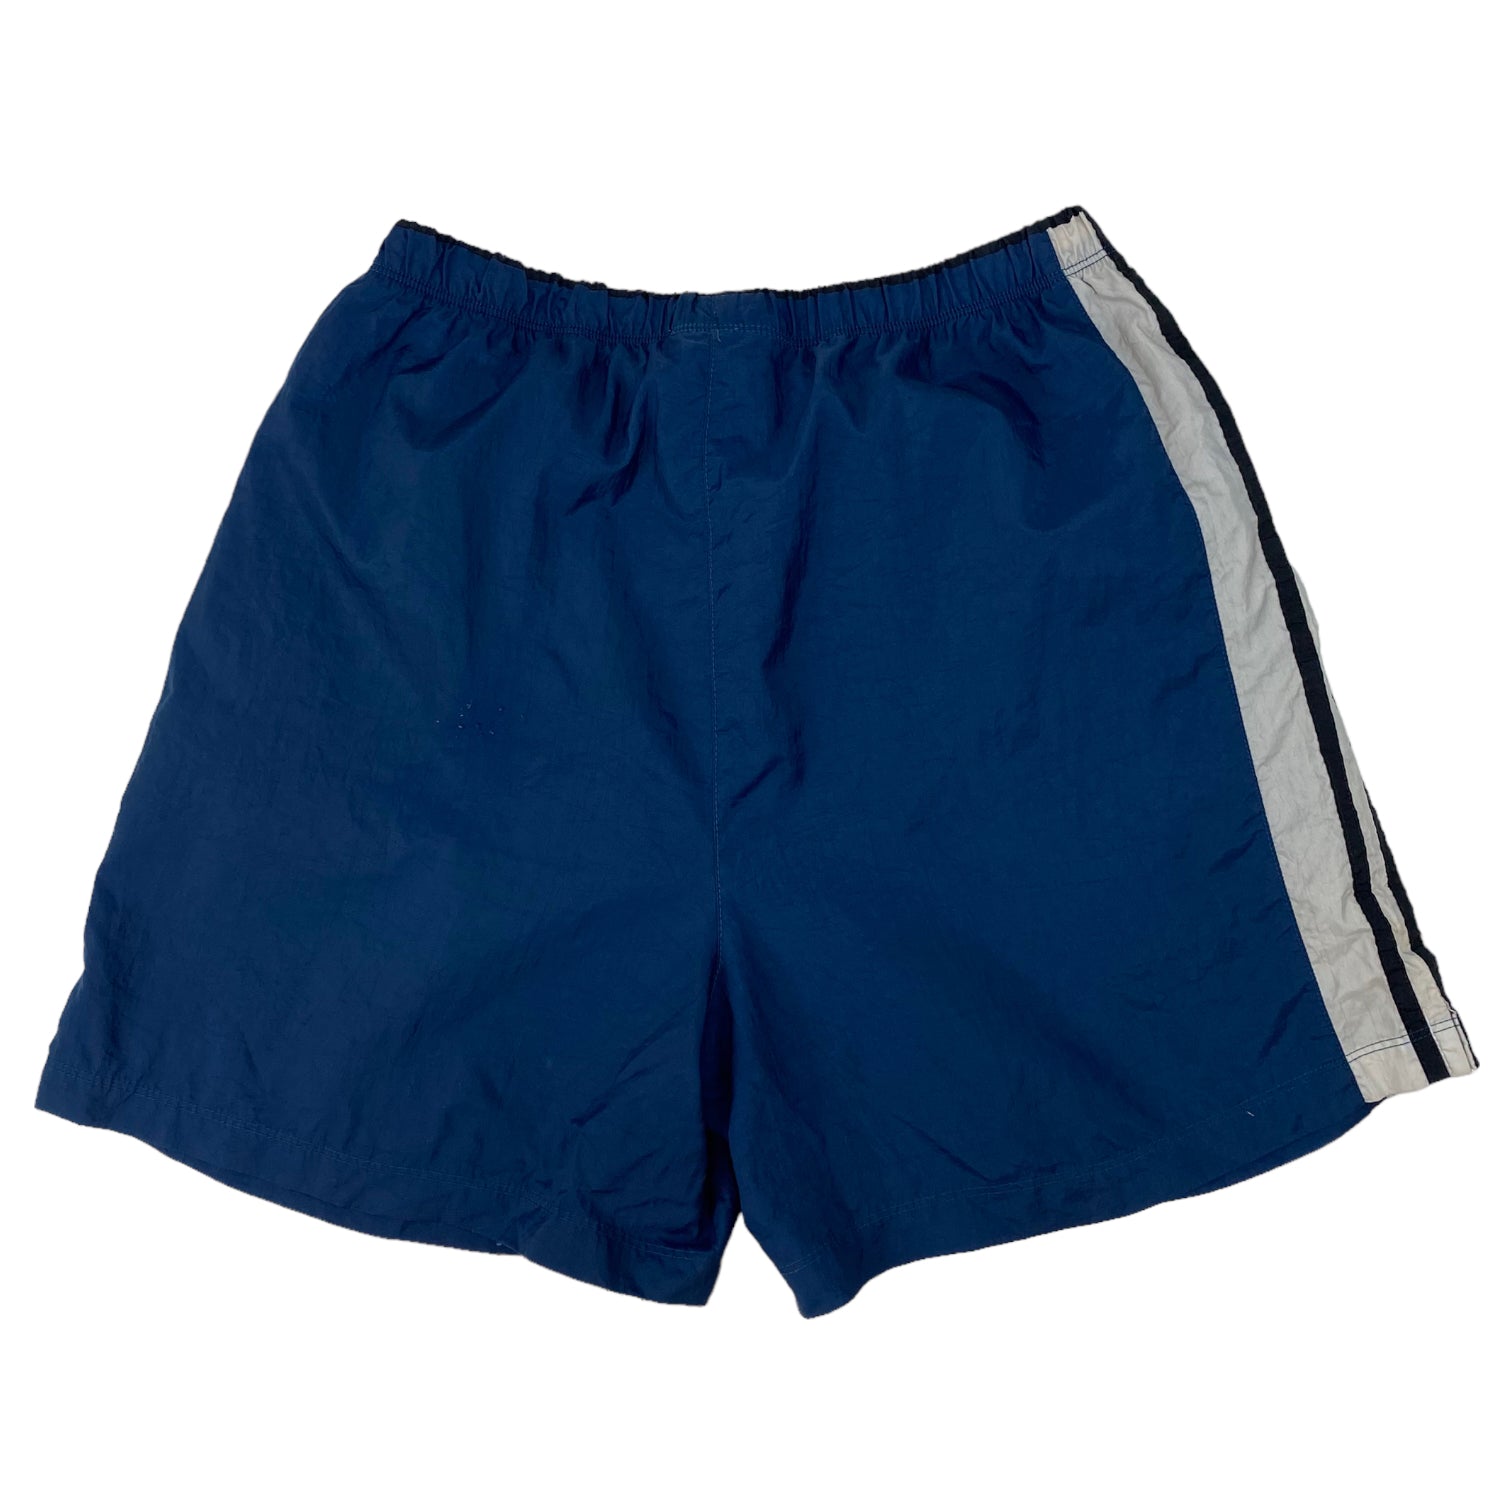 Vintage Adidas Nylon Shorts Navy